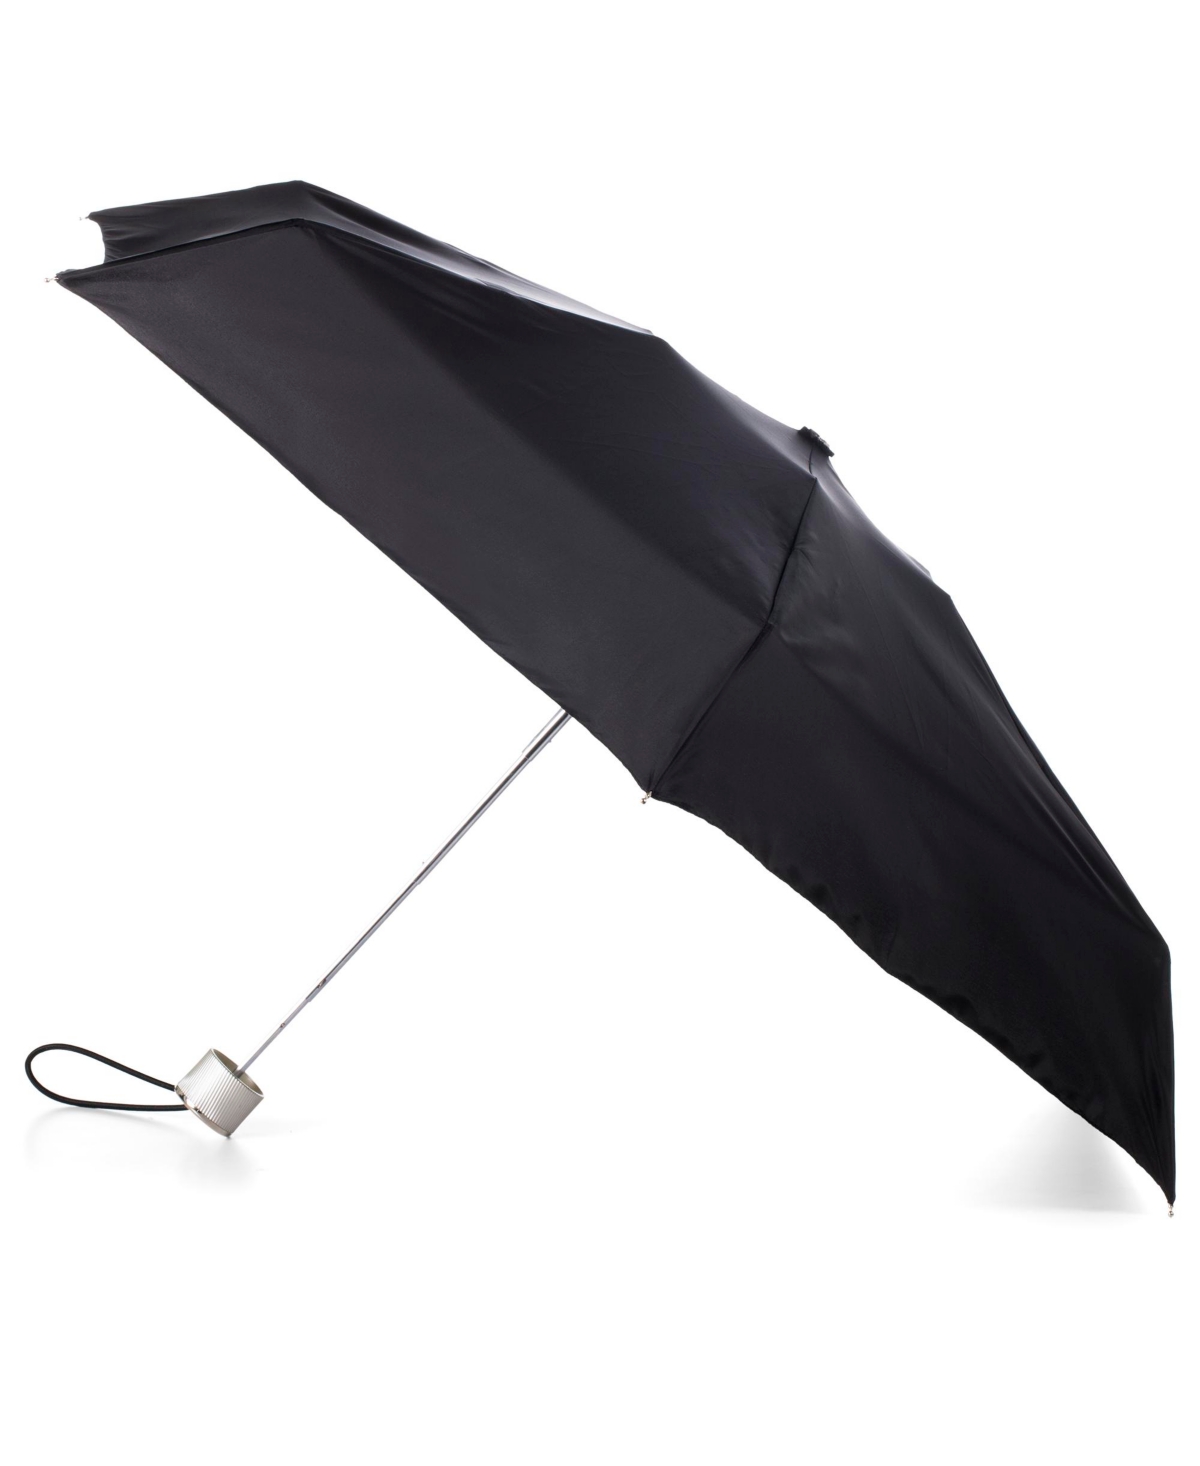 Totes Water Repellent Auto Open Close Folding Umbrella With Sunguard In Black